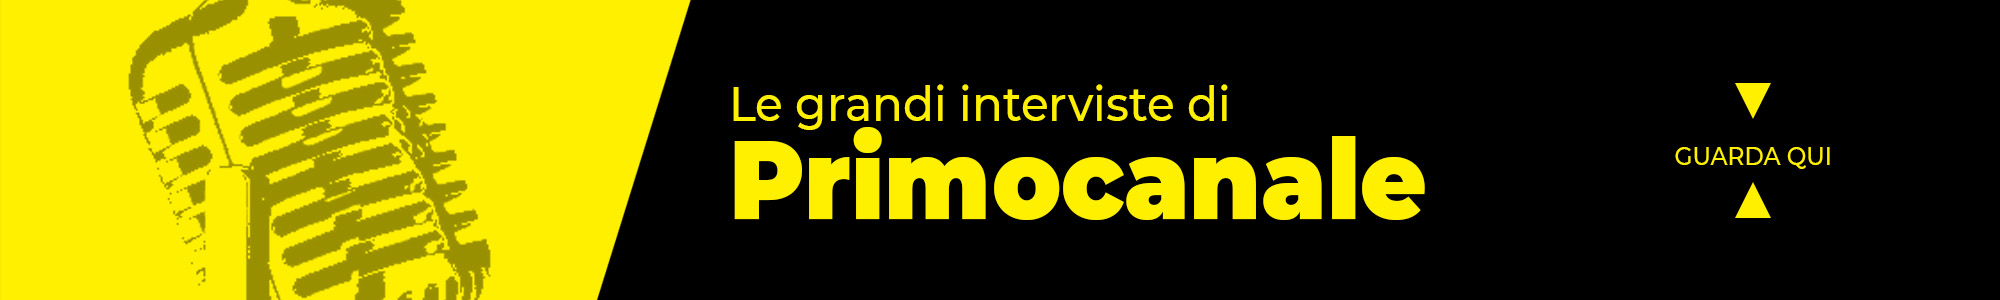 Banner - Interviste Primocanale Playlist